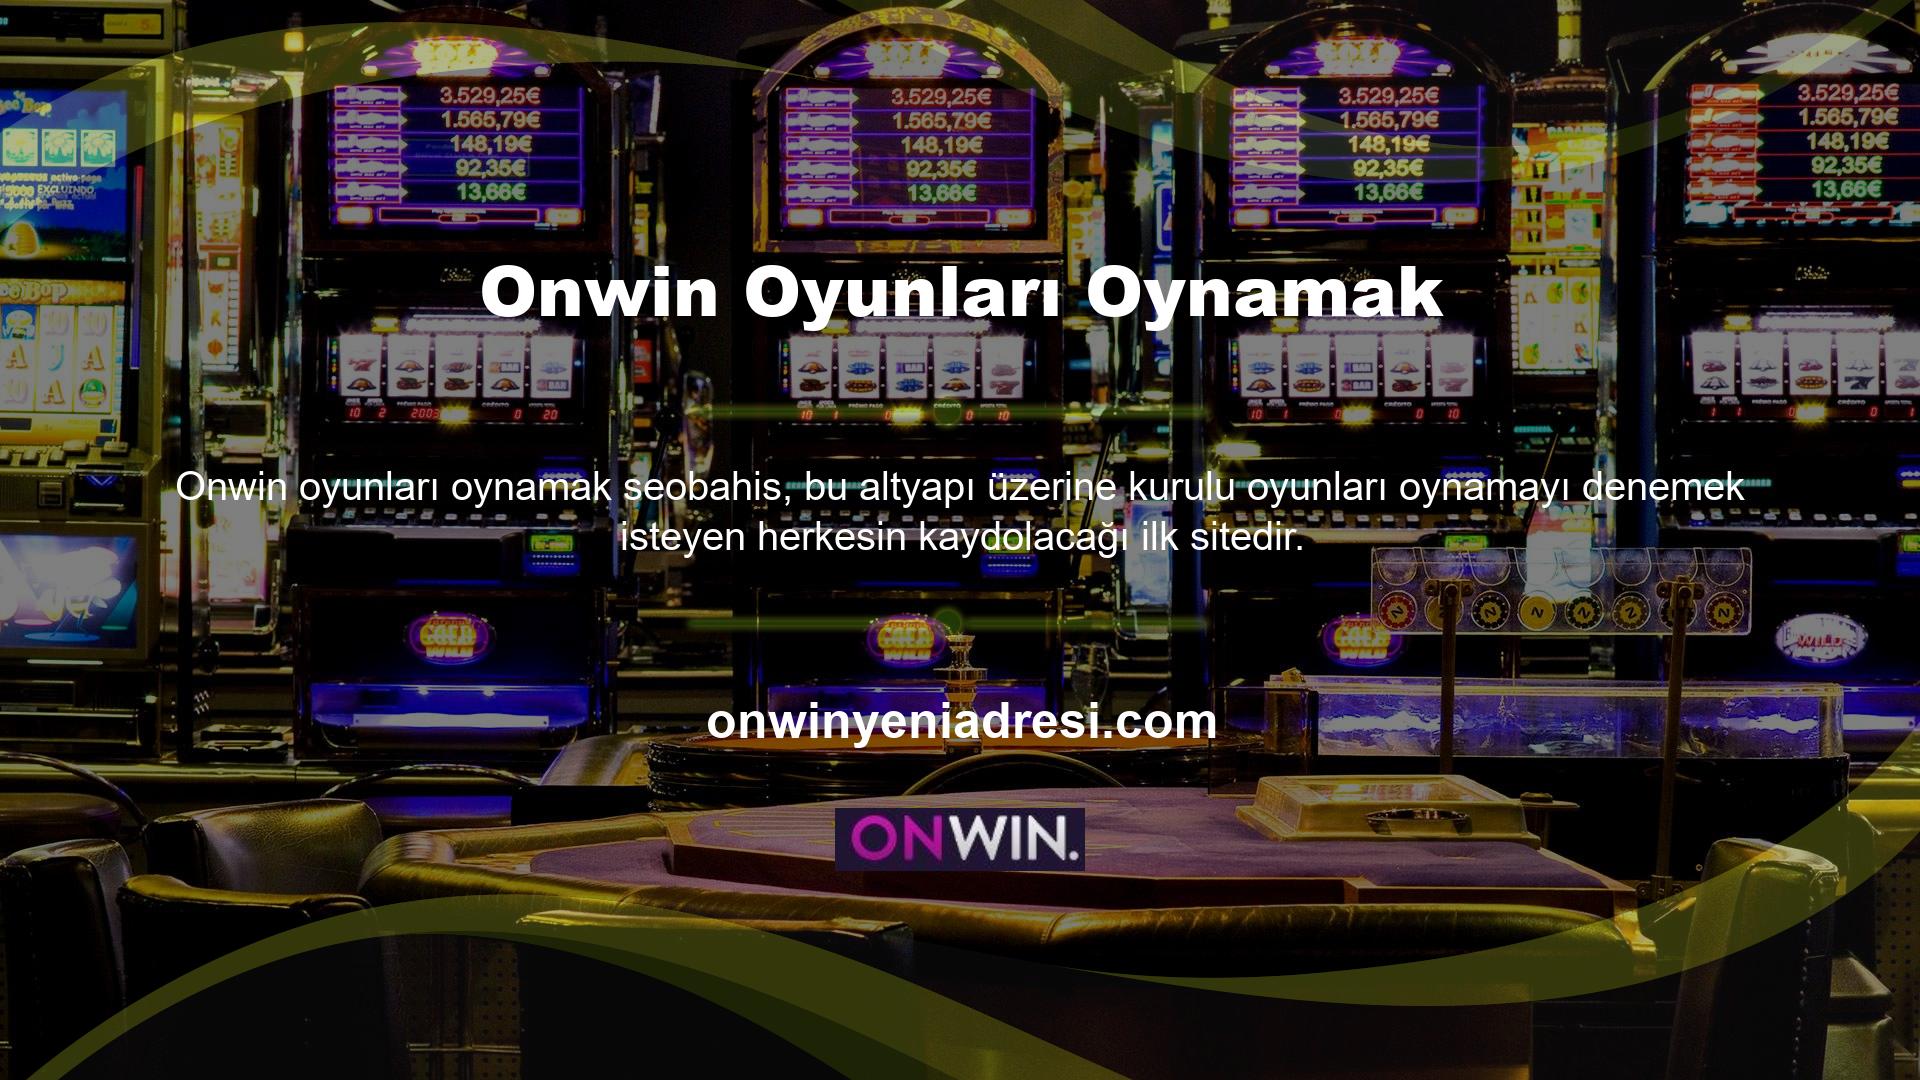 Onwin web sitesine kayıtlı olmayanlar bahis, casino, bonus veya diğer hizmetlere erişemez